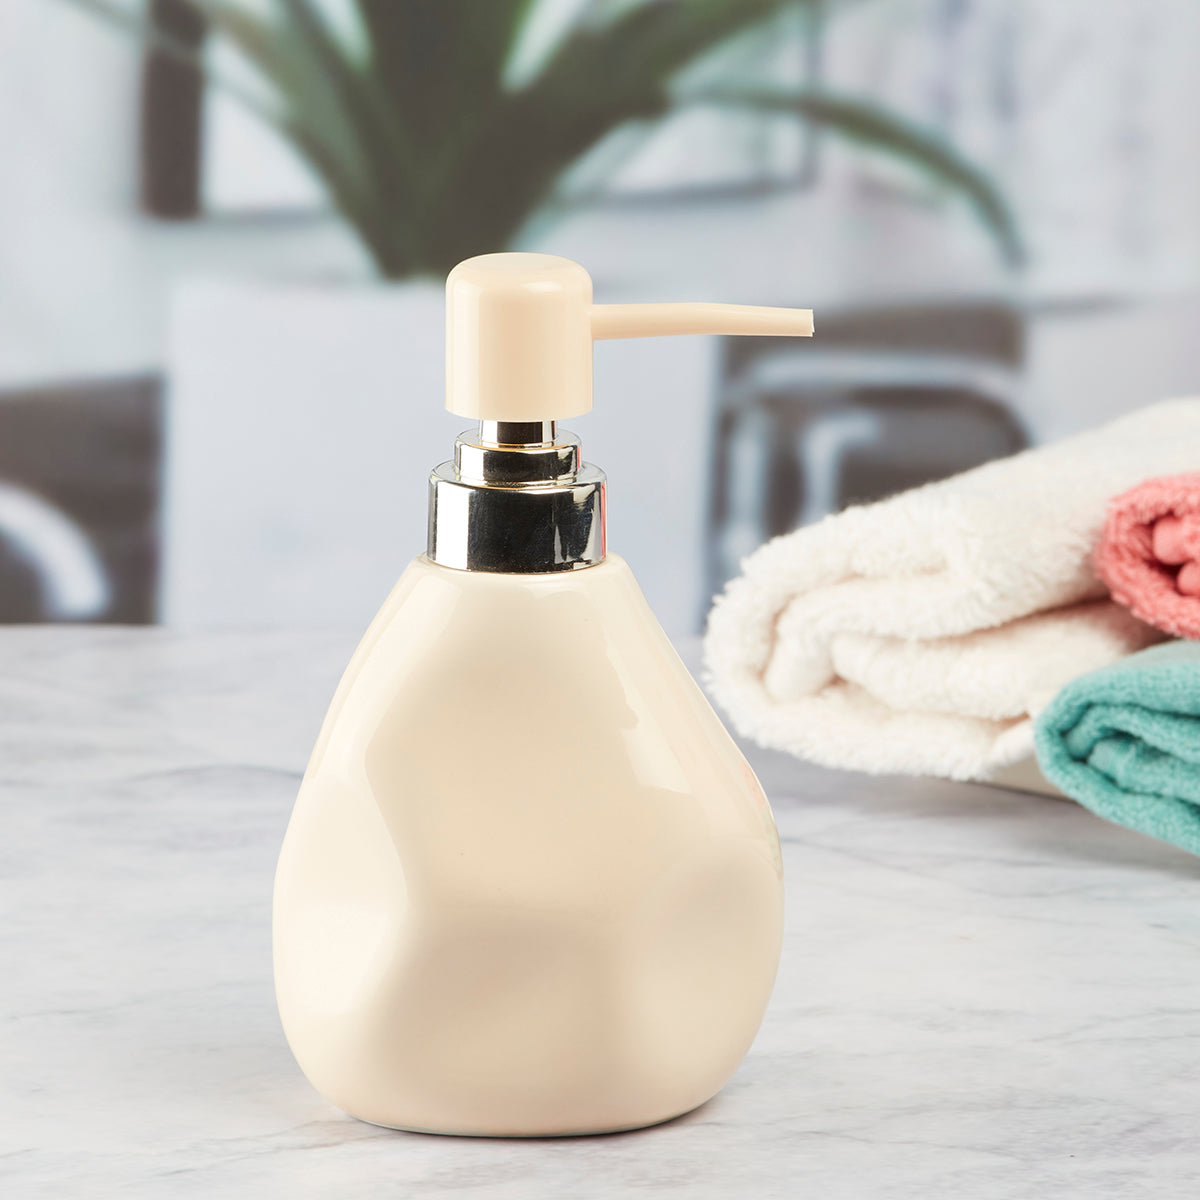 Kookee Ceramic Soap Dispenser for Bathroom handwash, refillable pump bottle for Kitchen hand wash basin, Set of 1, Beige (7625)